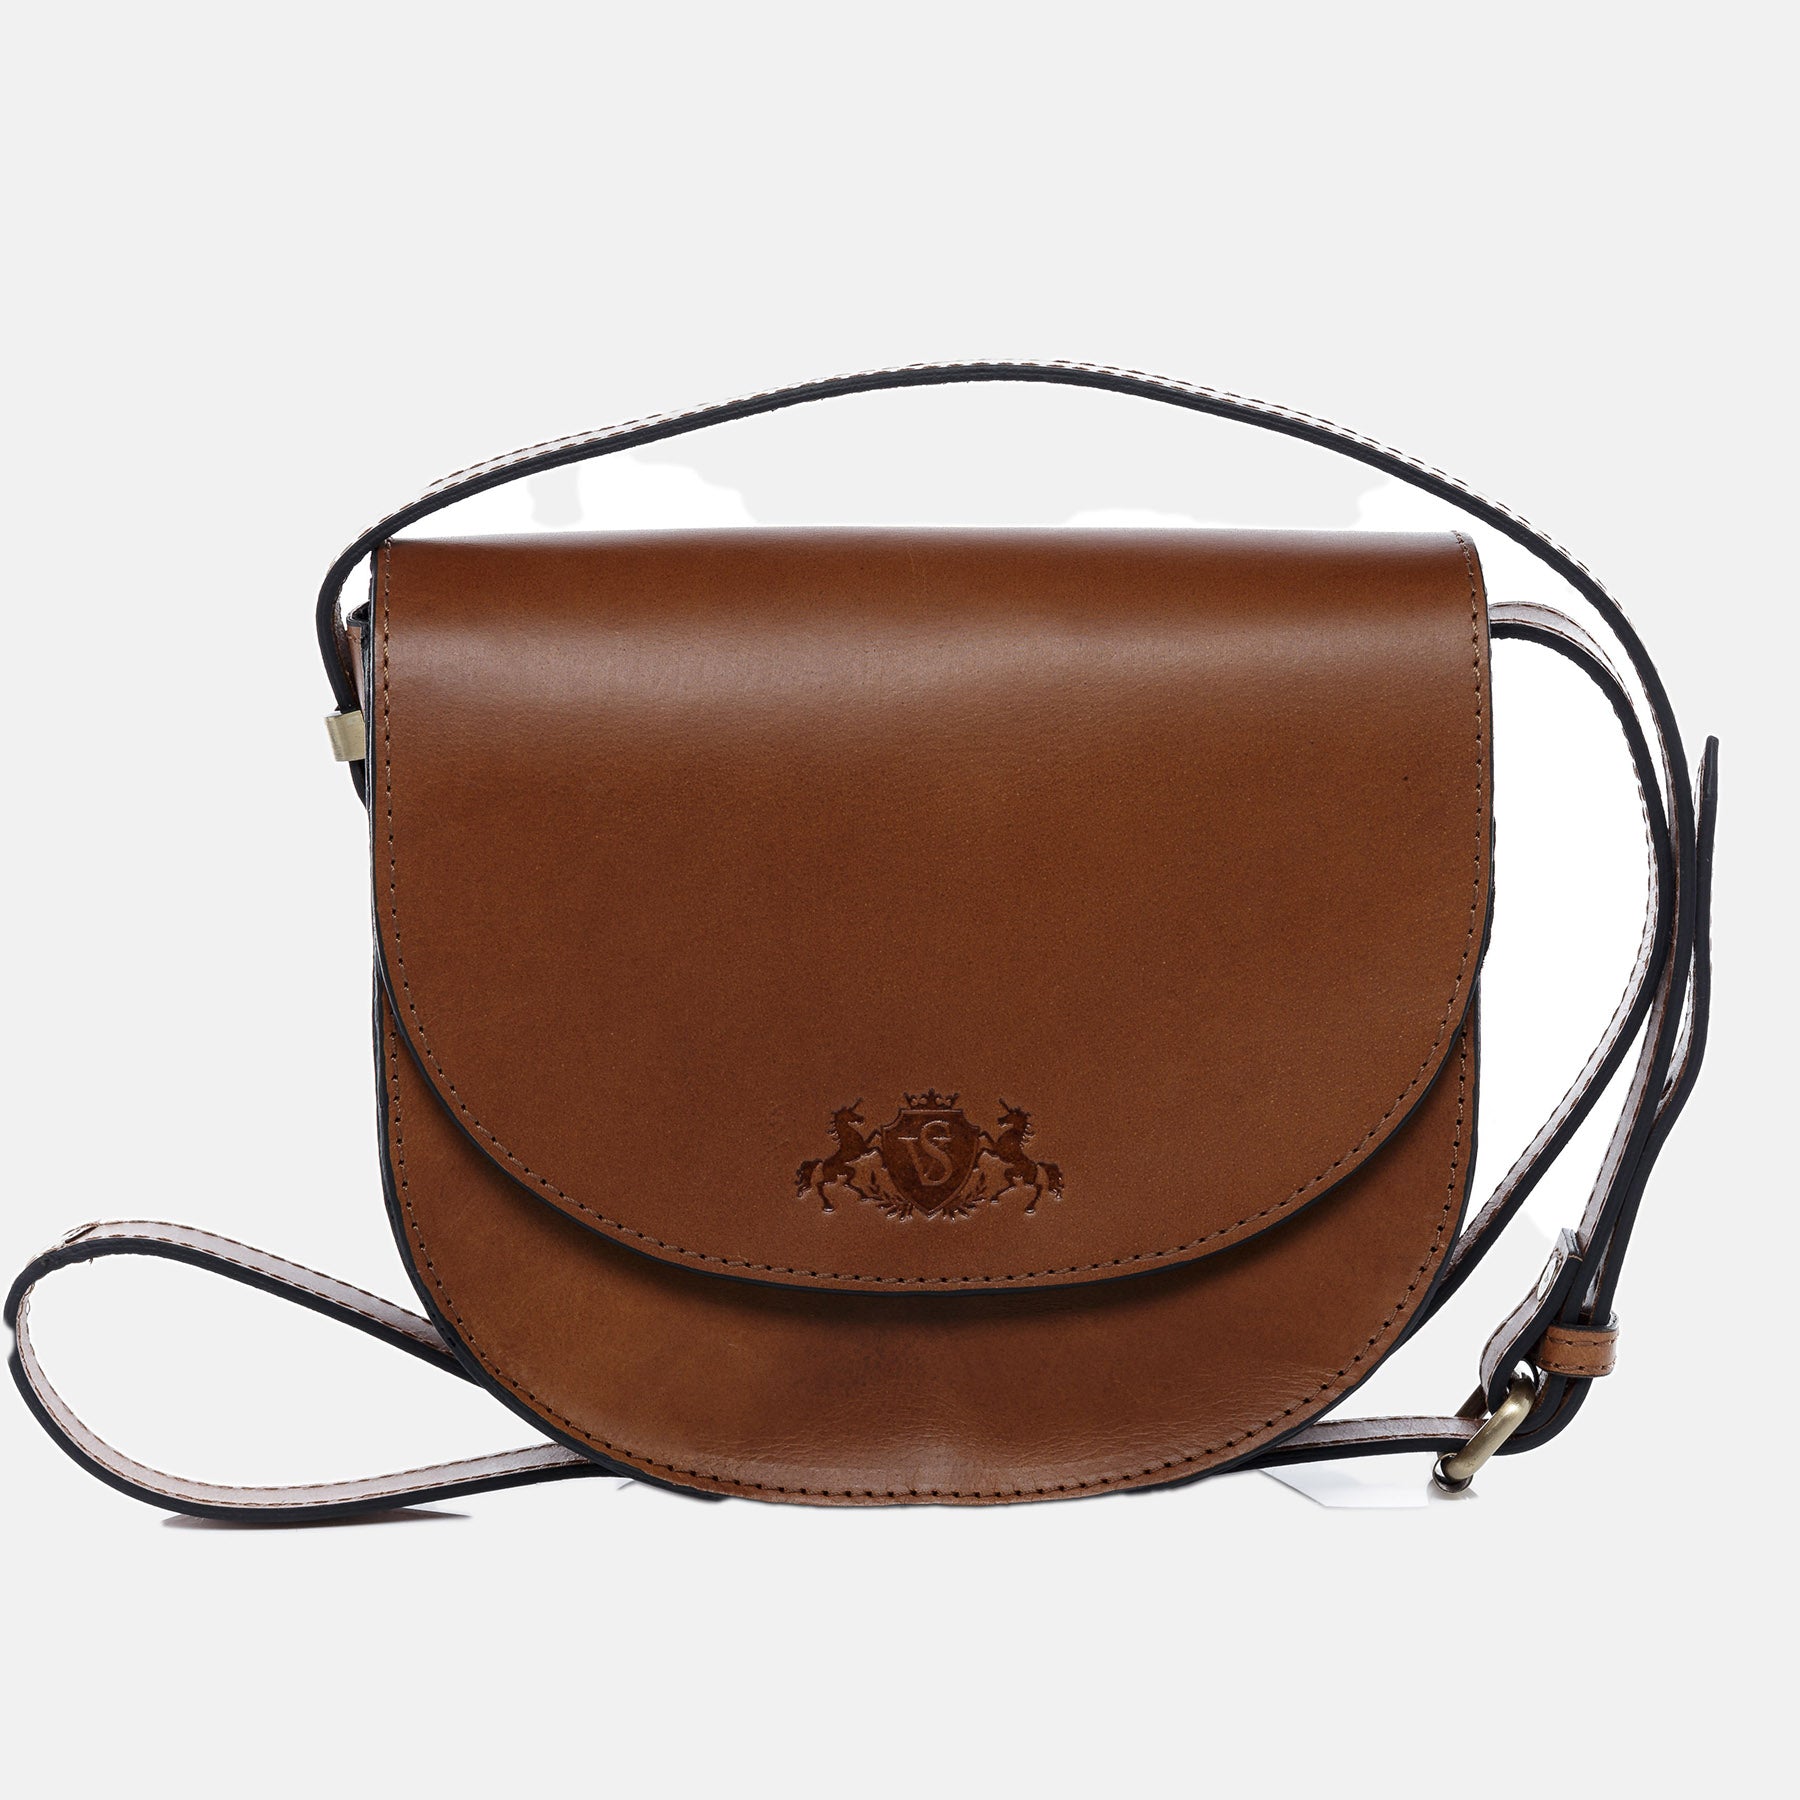 Shoulder bag TRISH saddle leather light brown-cognac